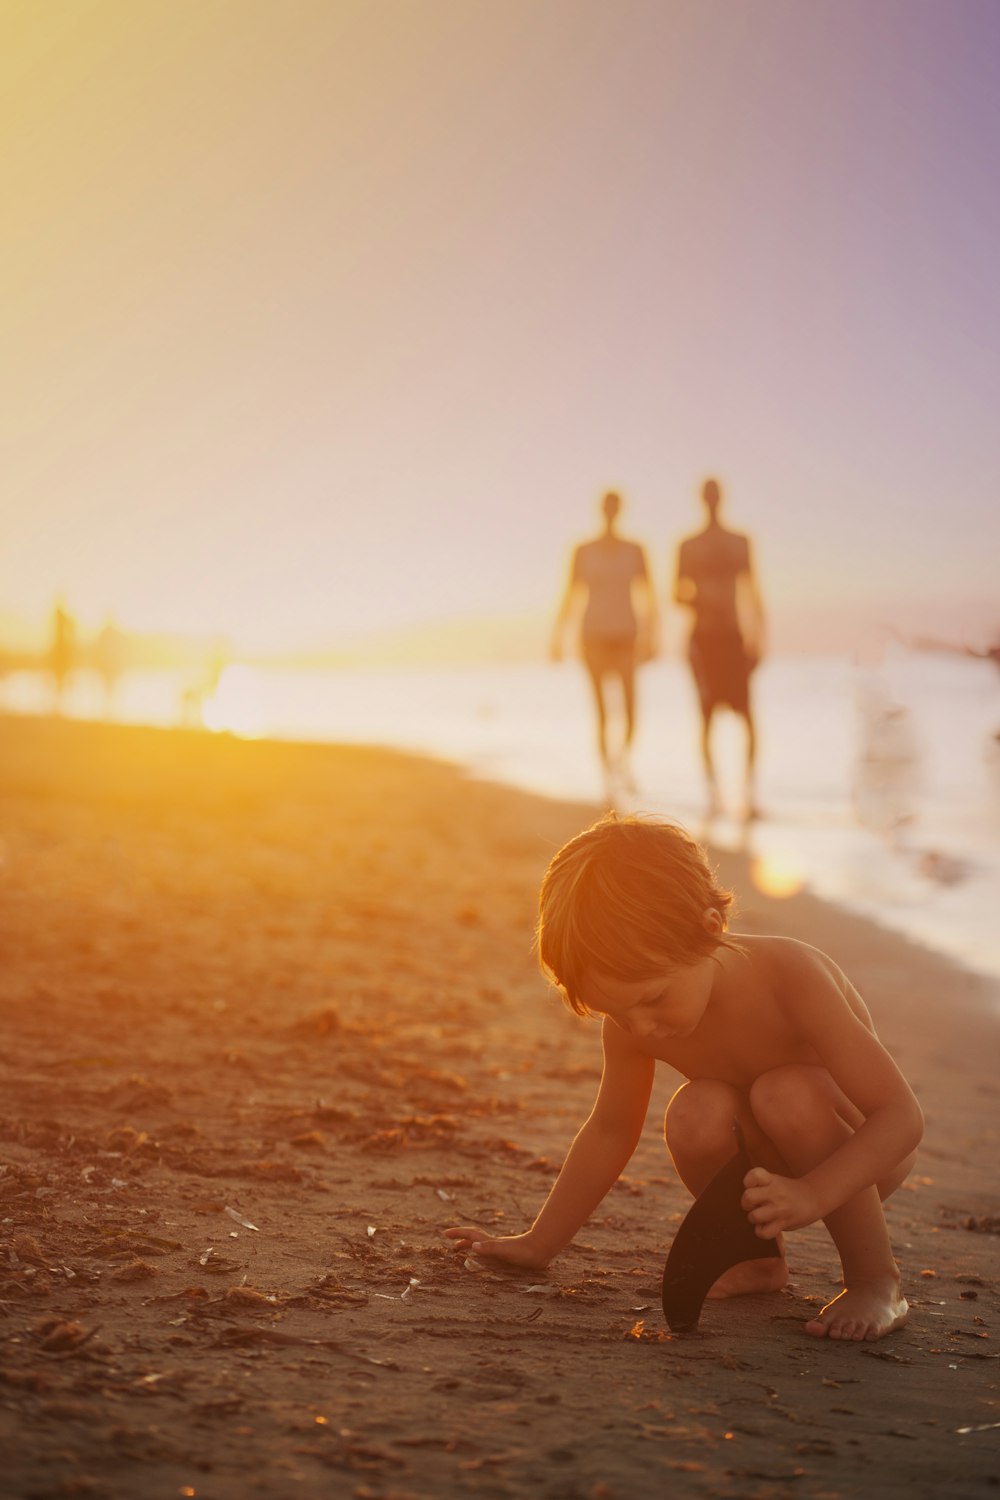 夕暮れ時に海岸で砂遊びをする少年